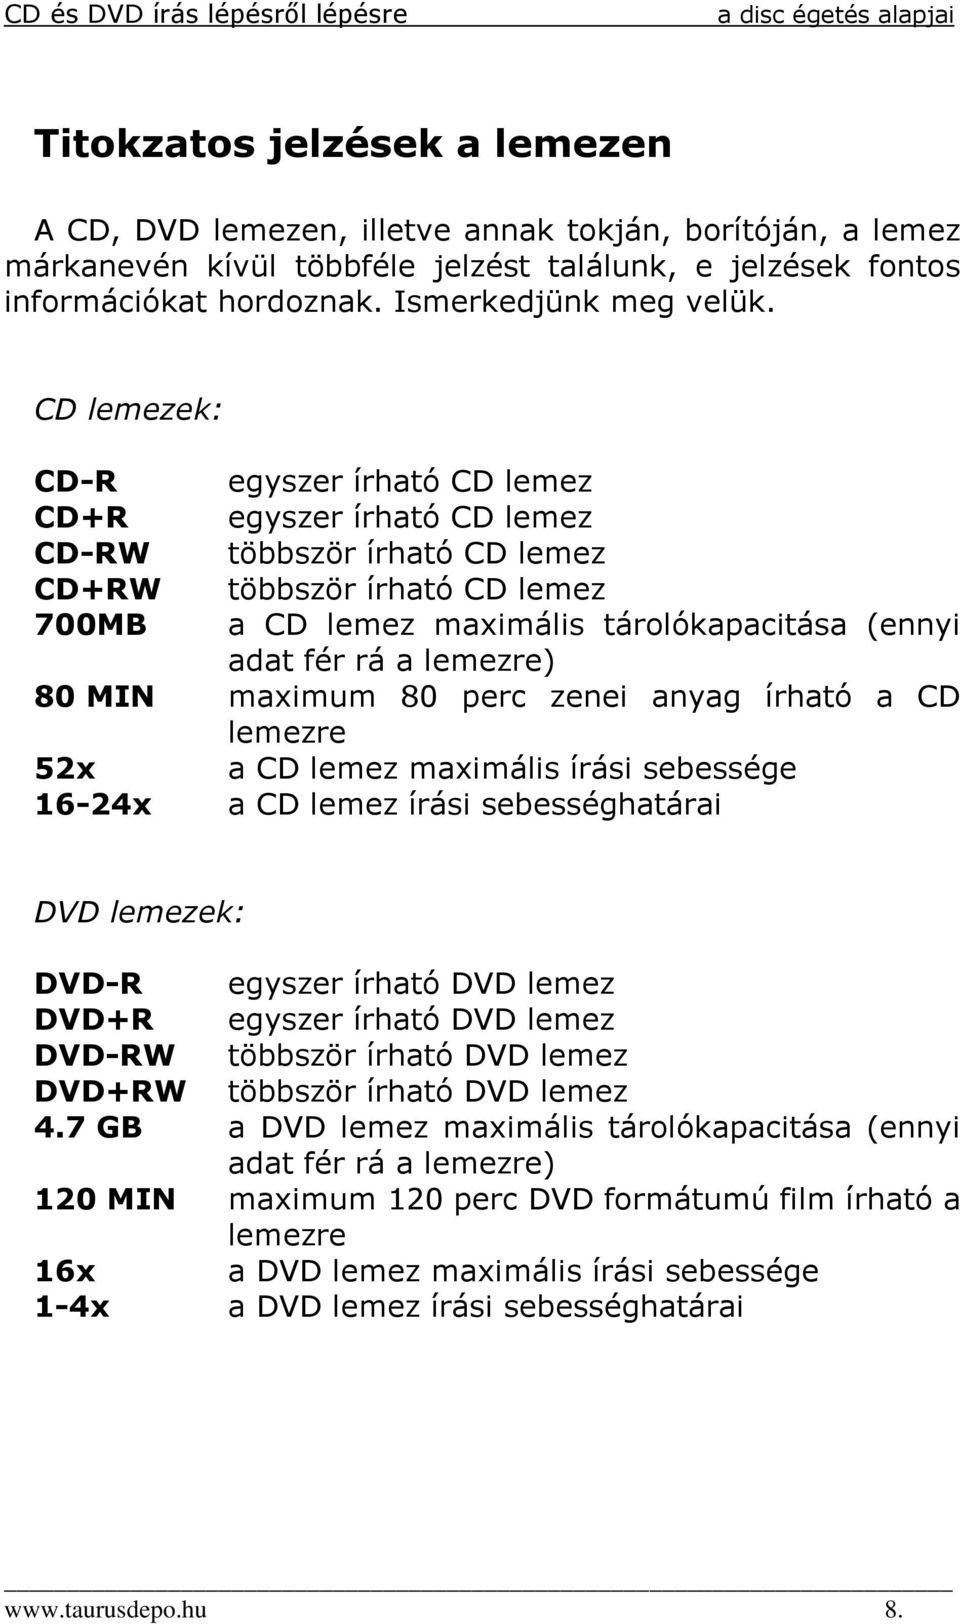 lemezre) 80 MIN maximum 80 perc zenei anyag írható a CD lemezre 52x a CD lemez maximális írási sebessége 16-24x a CD lemez írási sebességhatárai DVD lemezek: DVD-R egyszer írható DVD lemez DVD+R